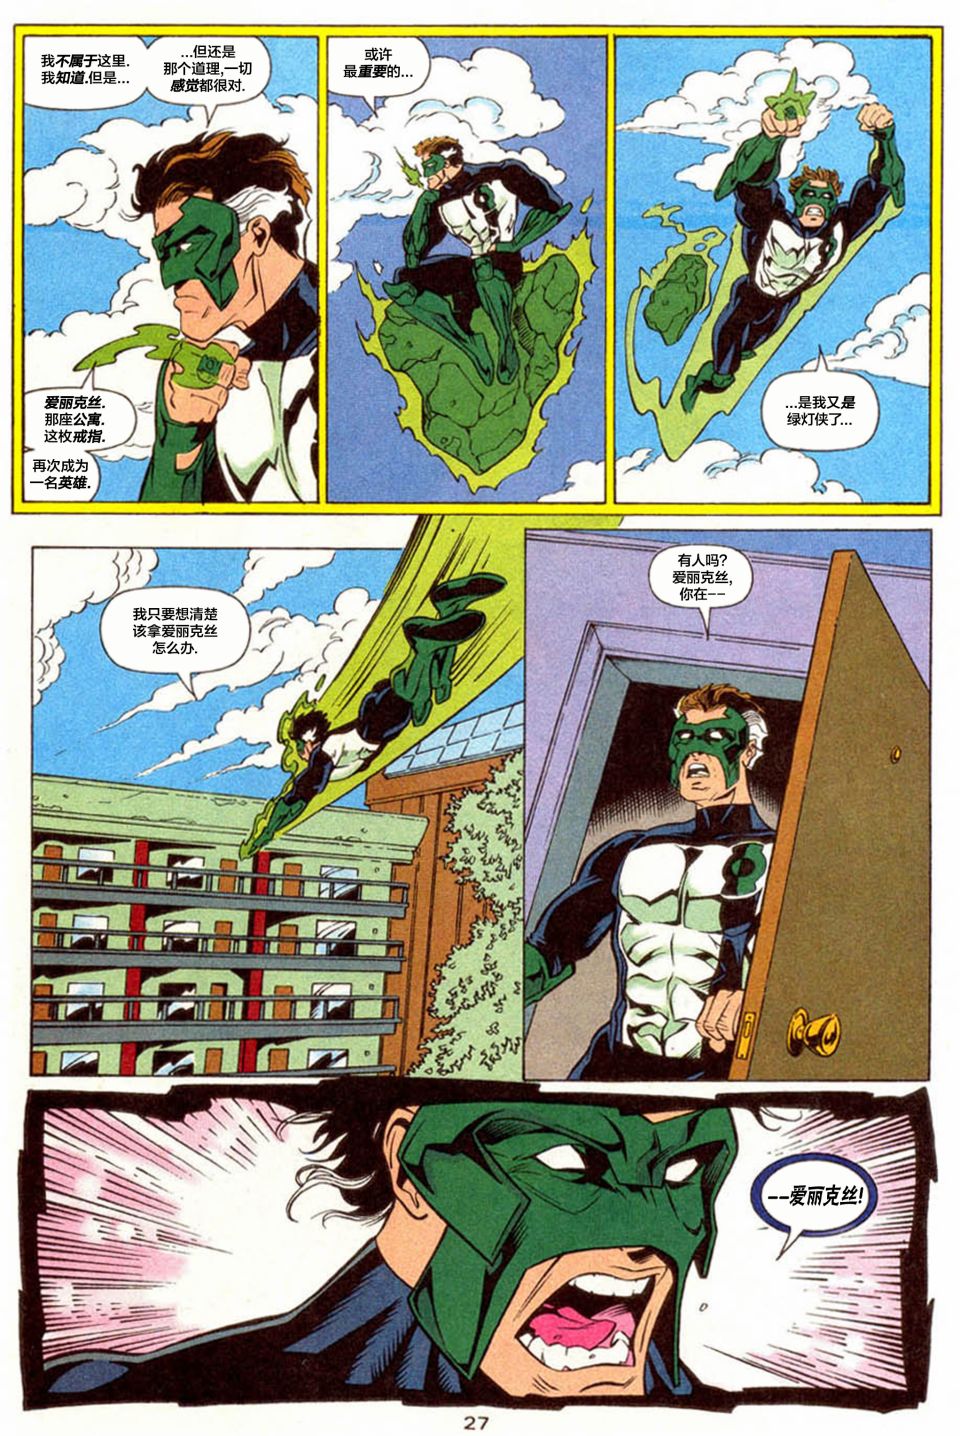 綠燈俠V3 - 年刊04 - 7